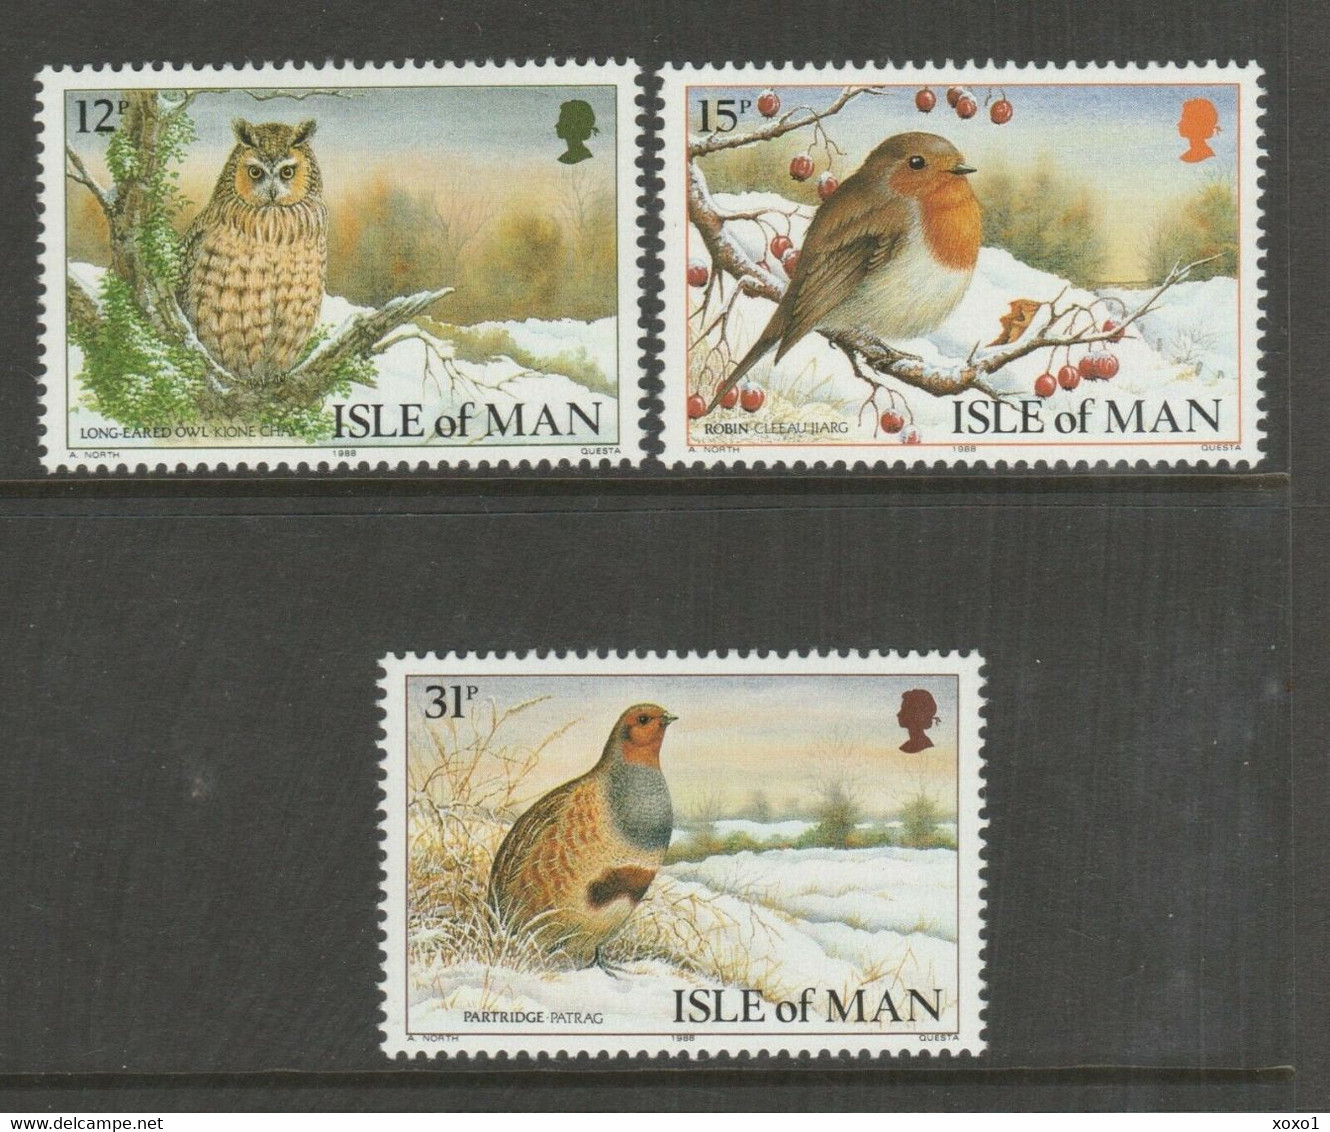 Isle Of Man 1988 MiNr. 385 - 387 Christmas Birds Owls 3v MNH** 4,00 € - Gufi E Civette